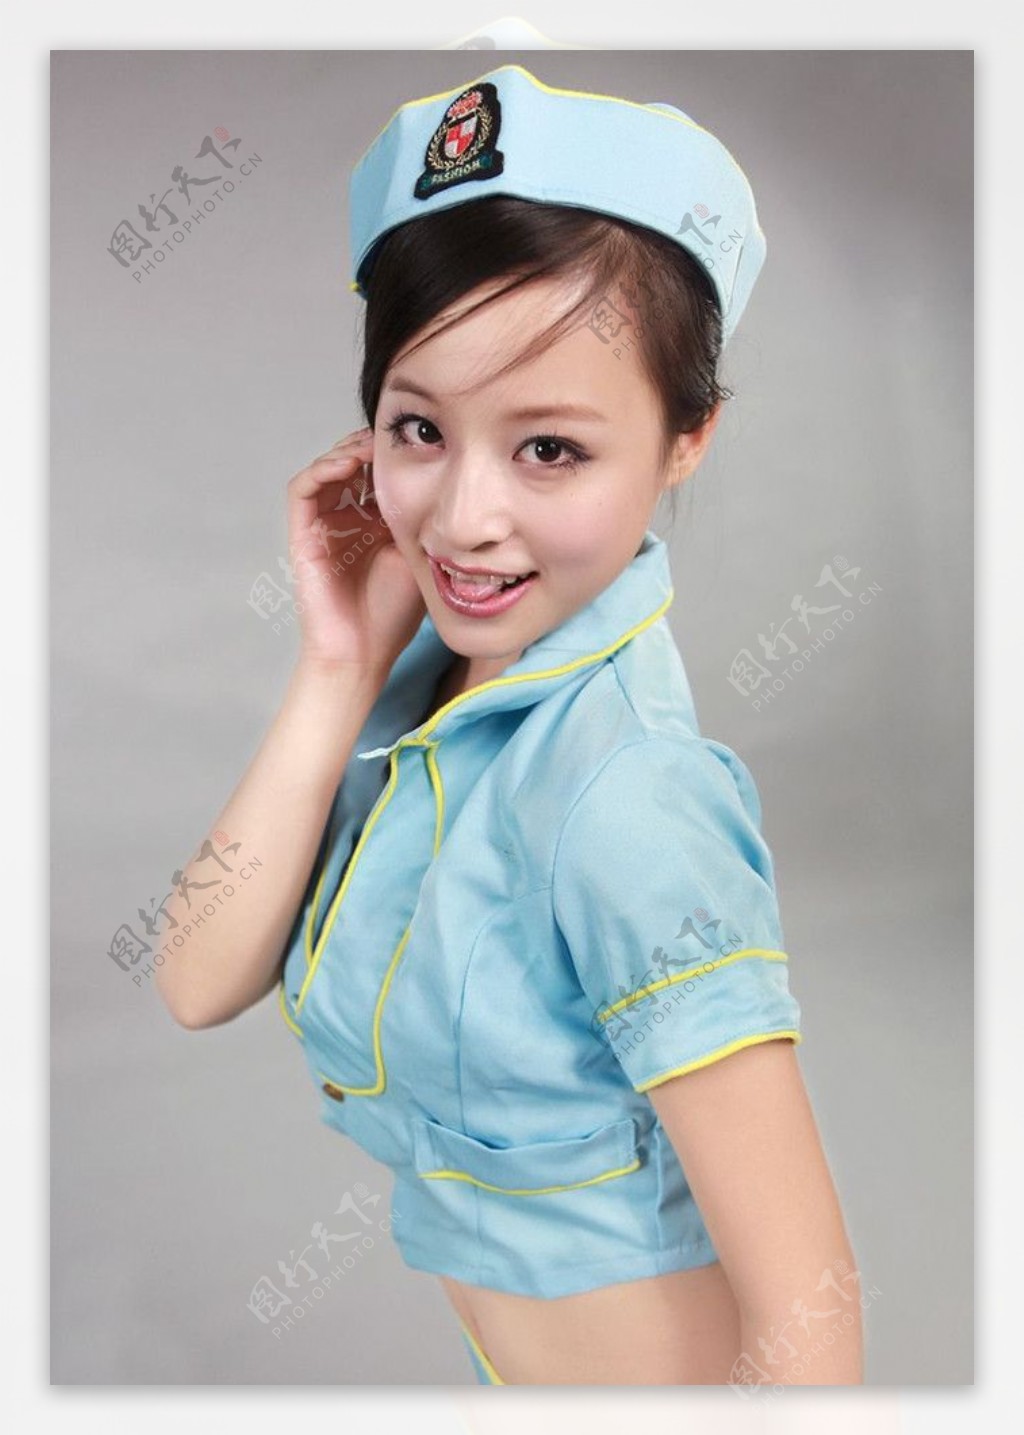 【寻找最美护士⑦】曾丽芳：病房里总能见到她忙碌的身影 | 于都县信息公开